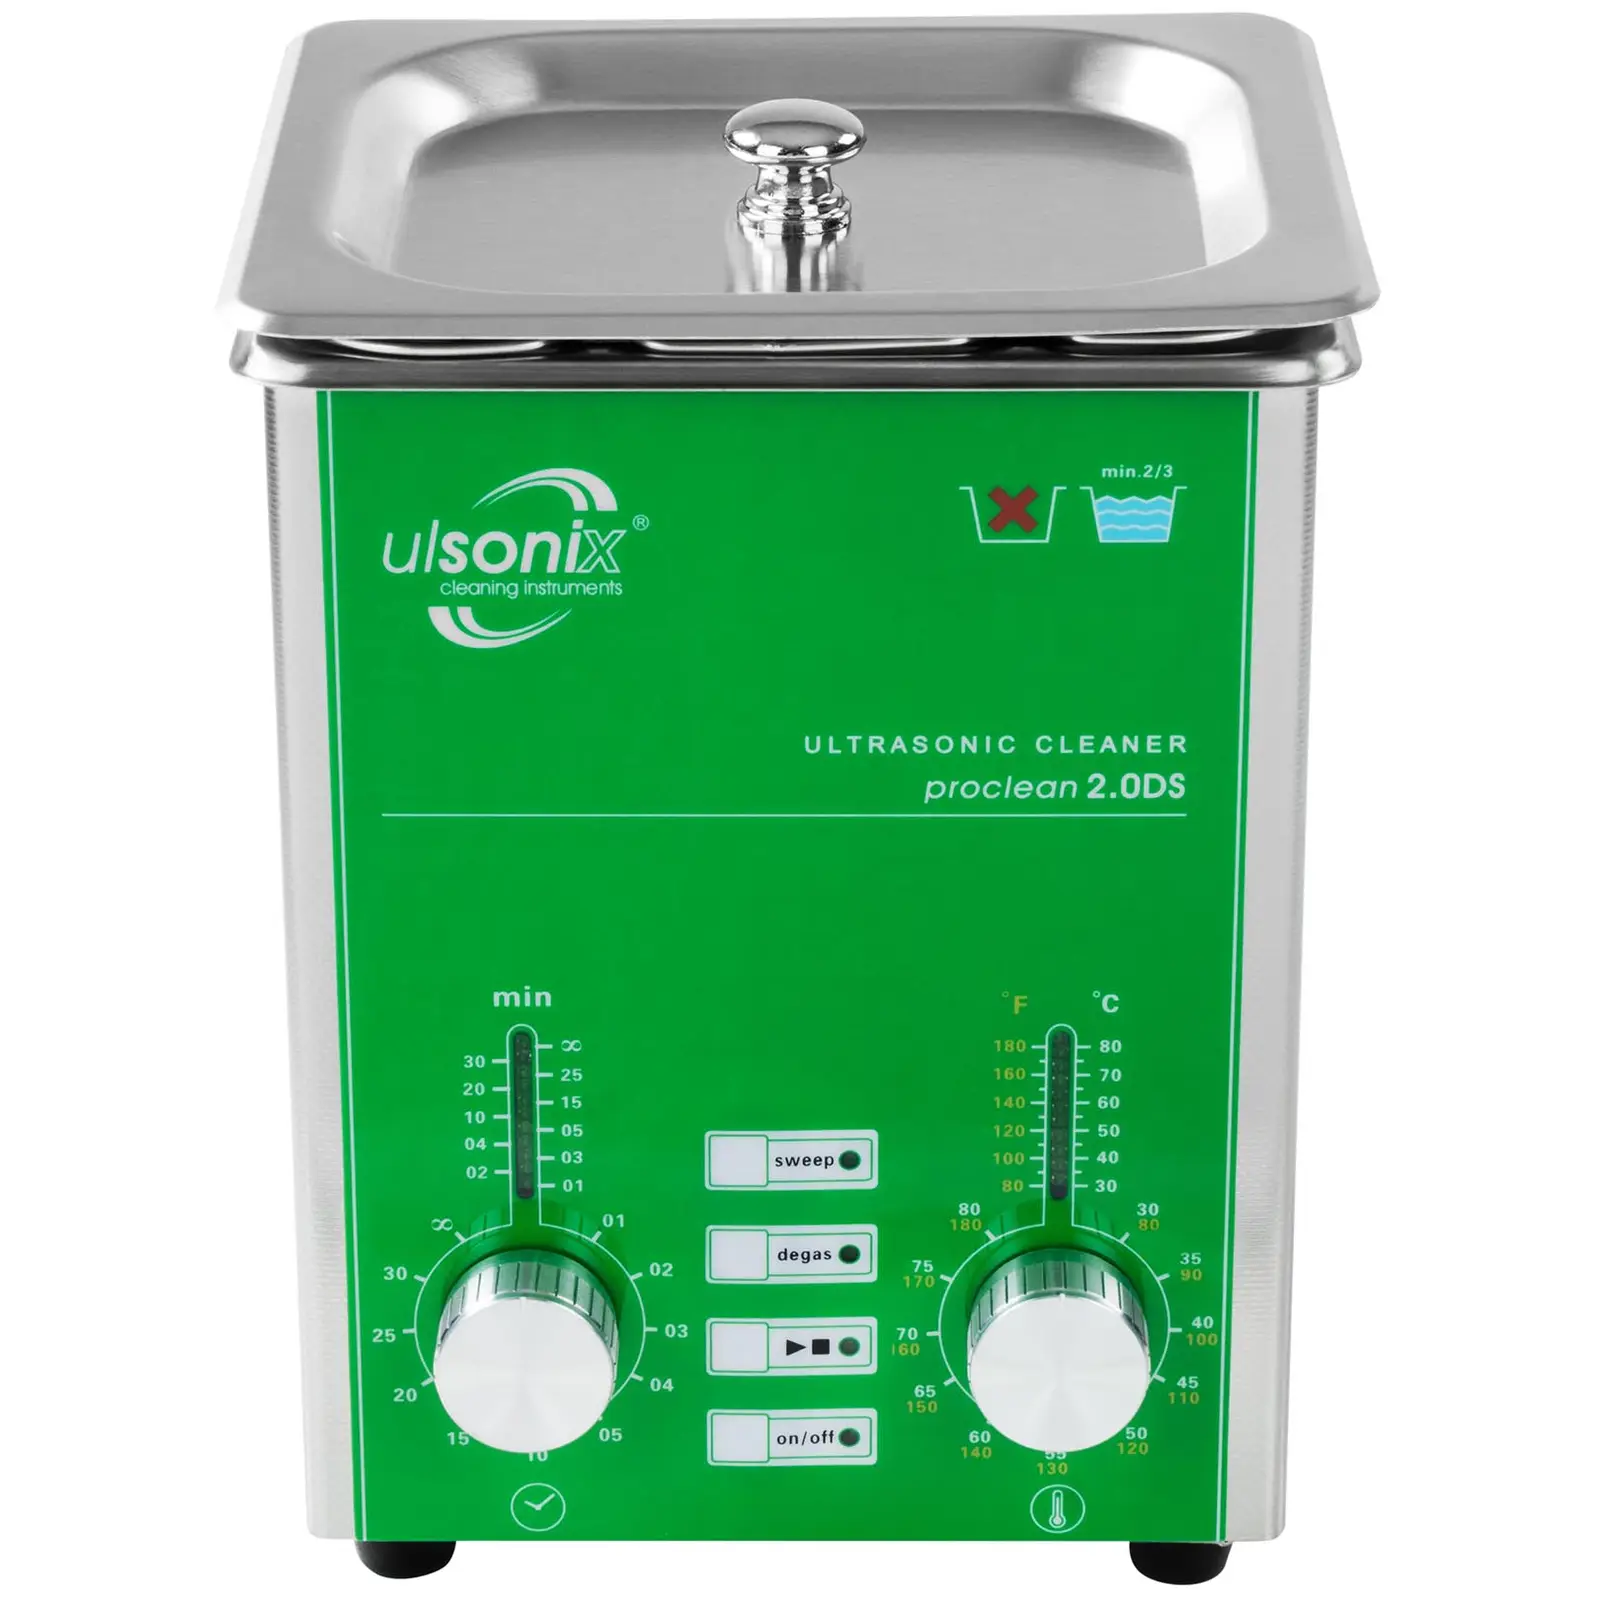 Ultrahangos tisztító - 2 liter - Degas - Sweep